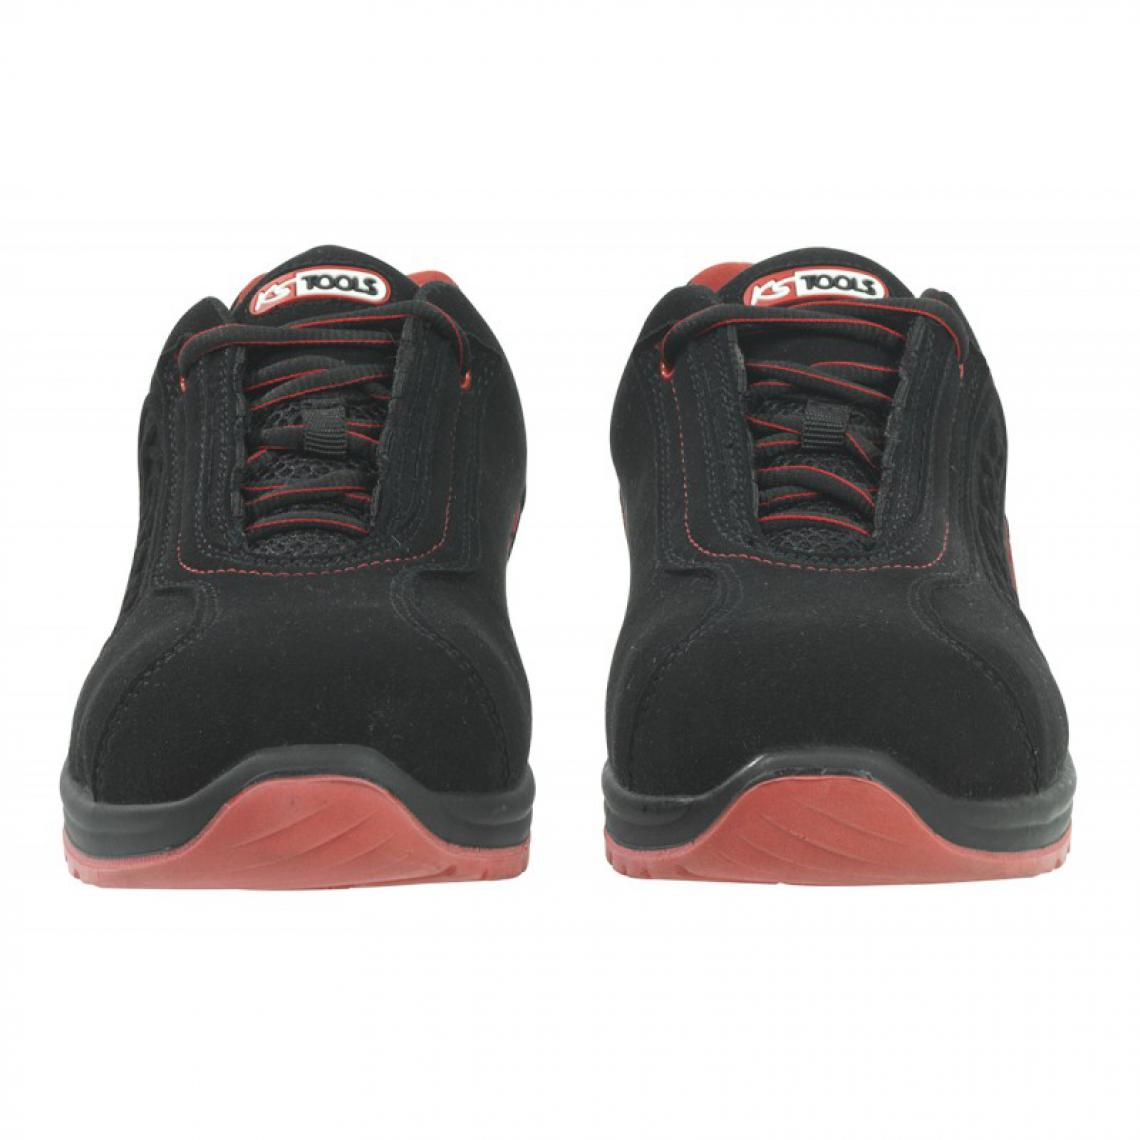 Kstools - Chaussures de sécurité KSTOOLS Couleur noire rouge taille 44 - Equipement de Protection Individuelle